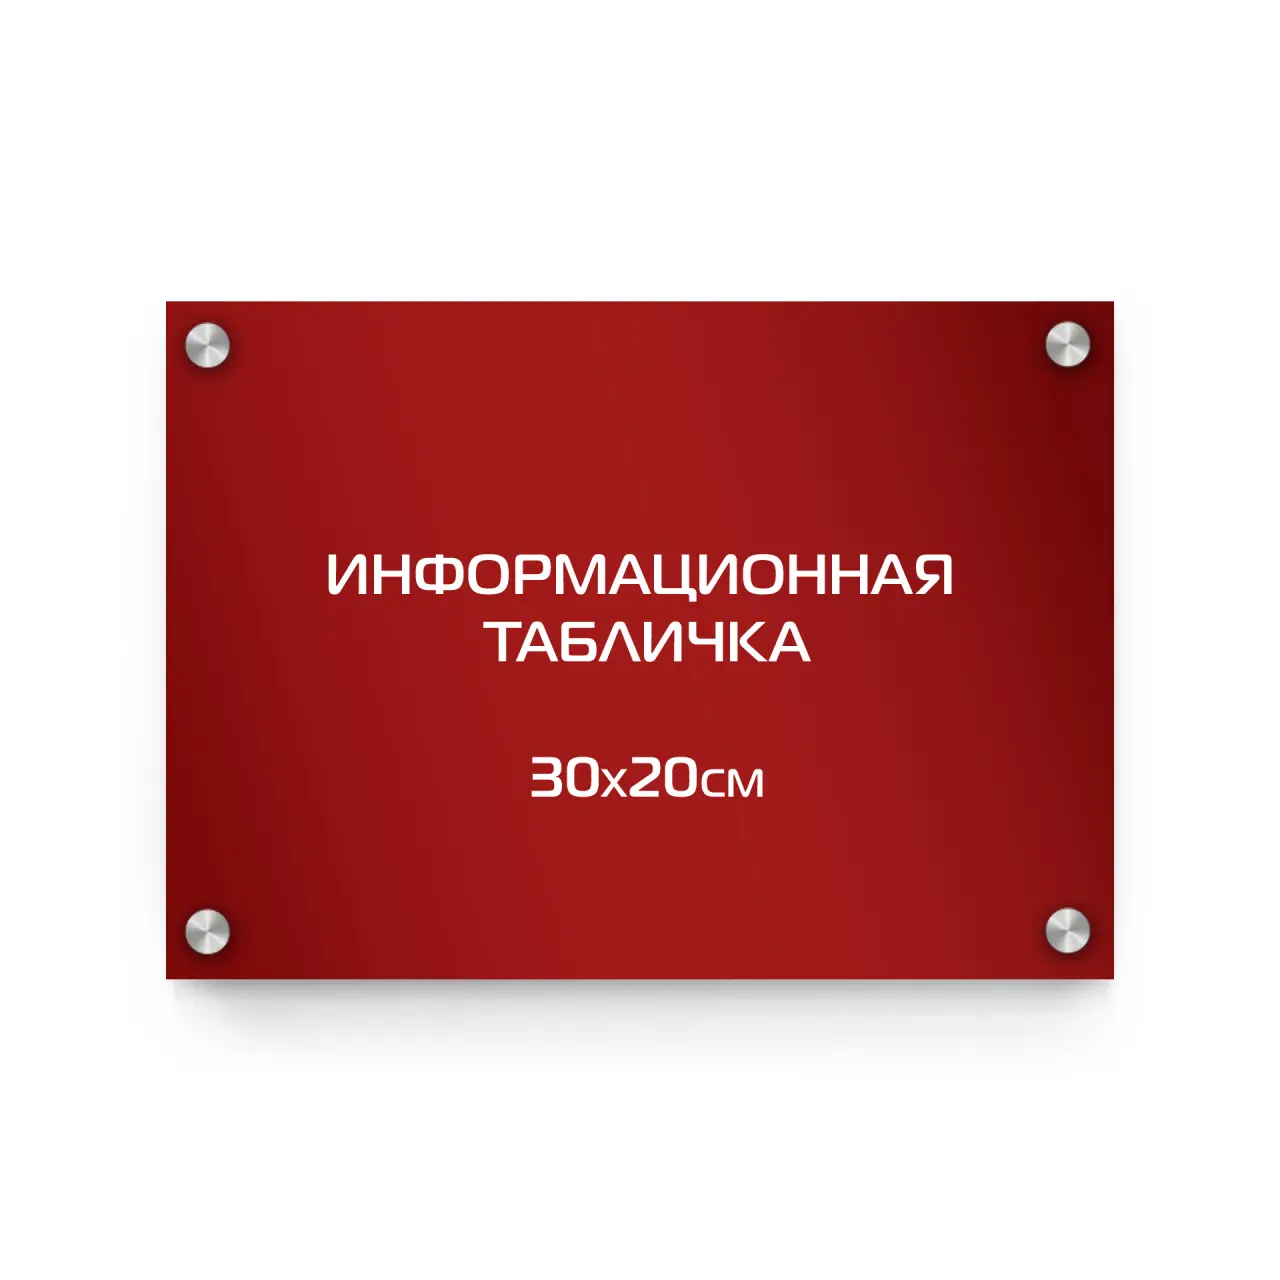 Информационная табличка из композита 30х20 см (цветной фон+белая аппликация) на дистанционных держателях